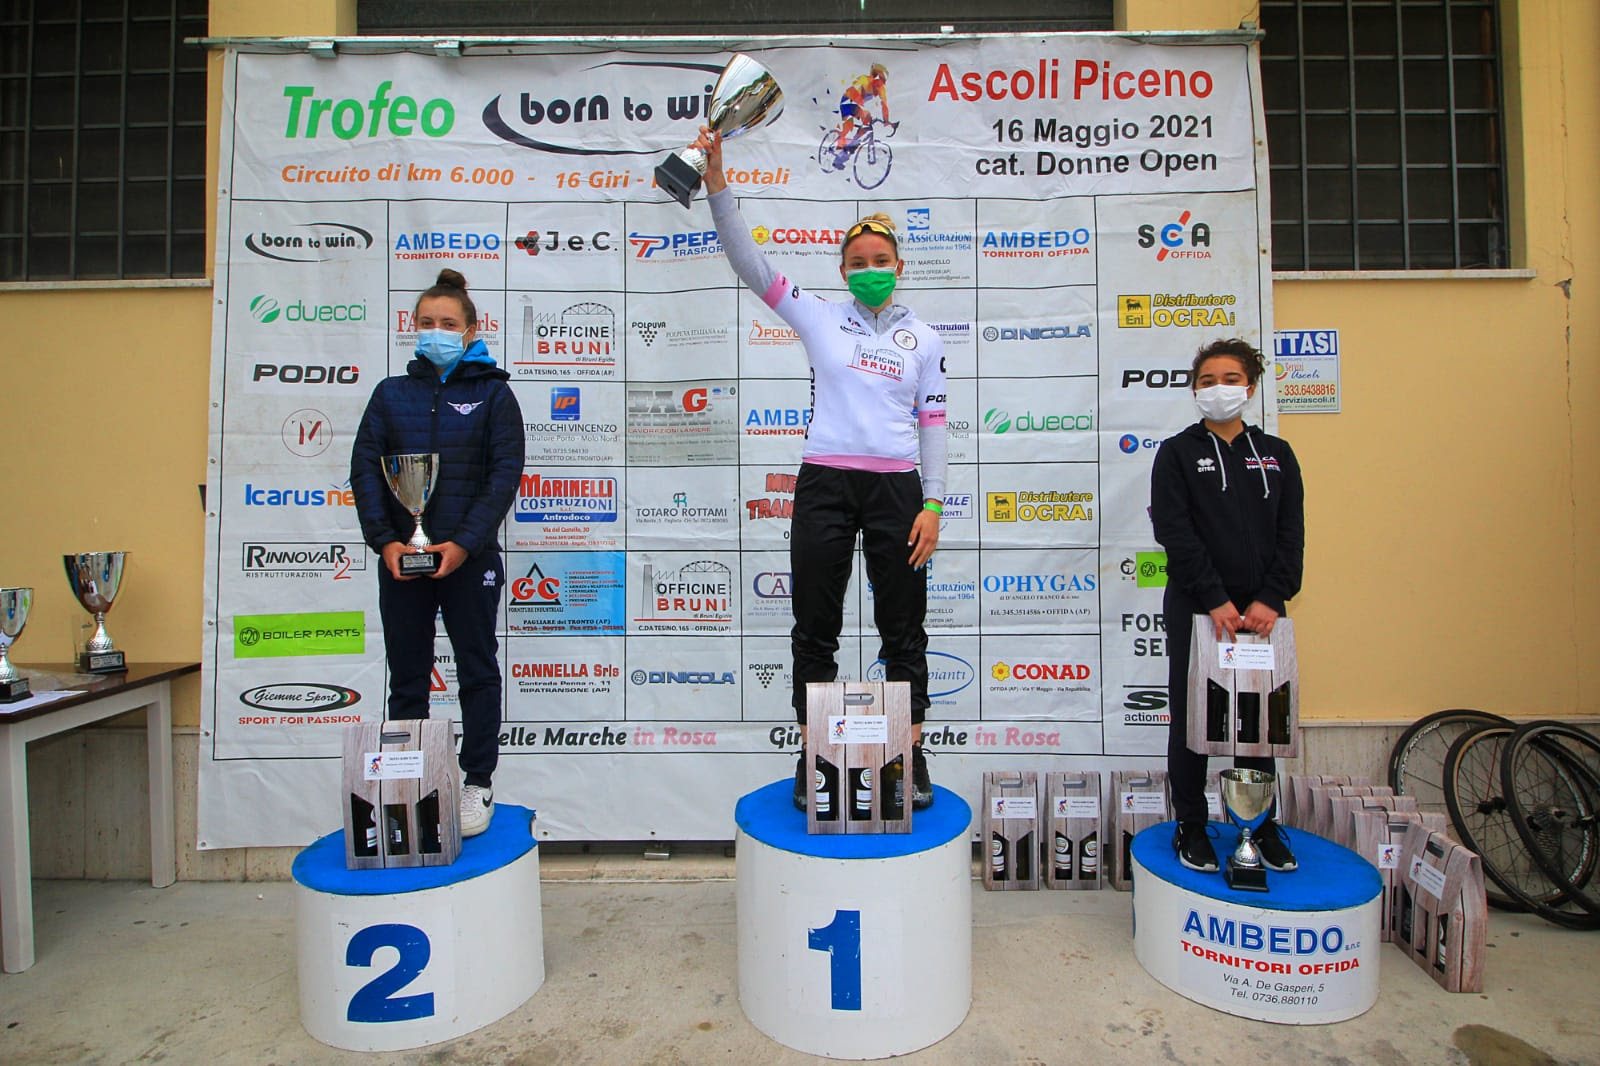 Il podio Donne Junior della gara Donne Open ad Ascoli Piceno, prima Sara Fiorin